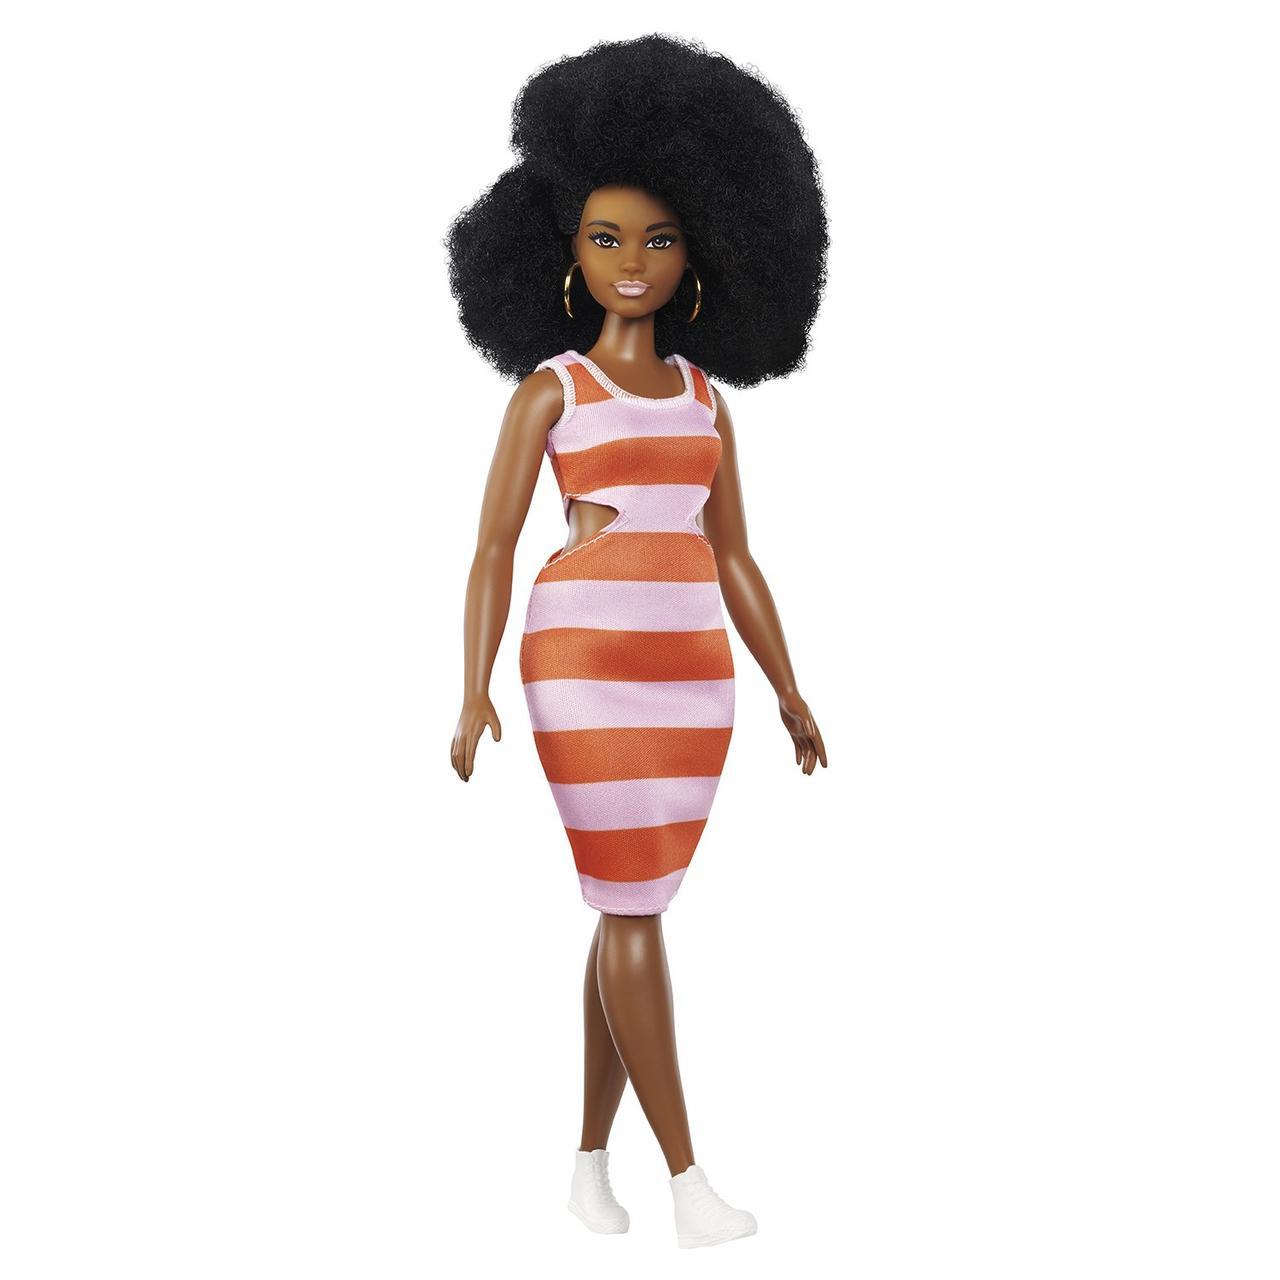 Barbie "Игра с модой" Кукла Барби Афроамериканка с пышной прической #105 (Пышная)